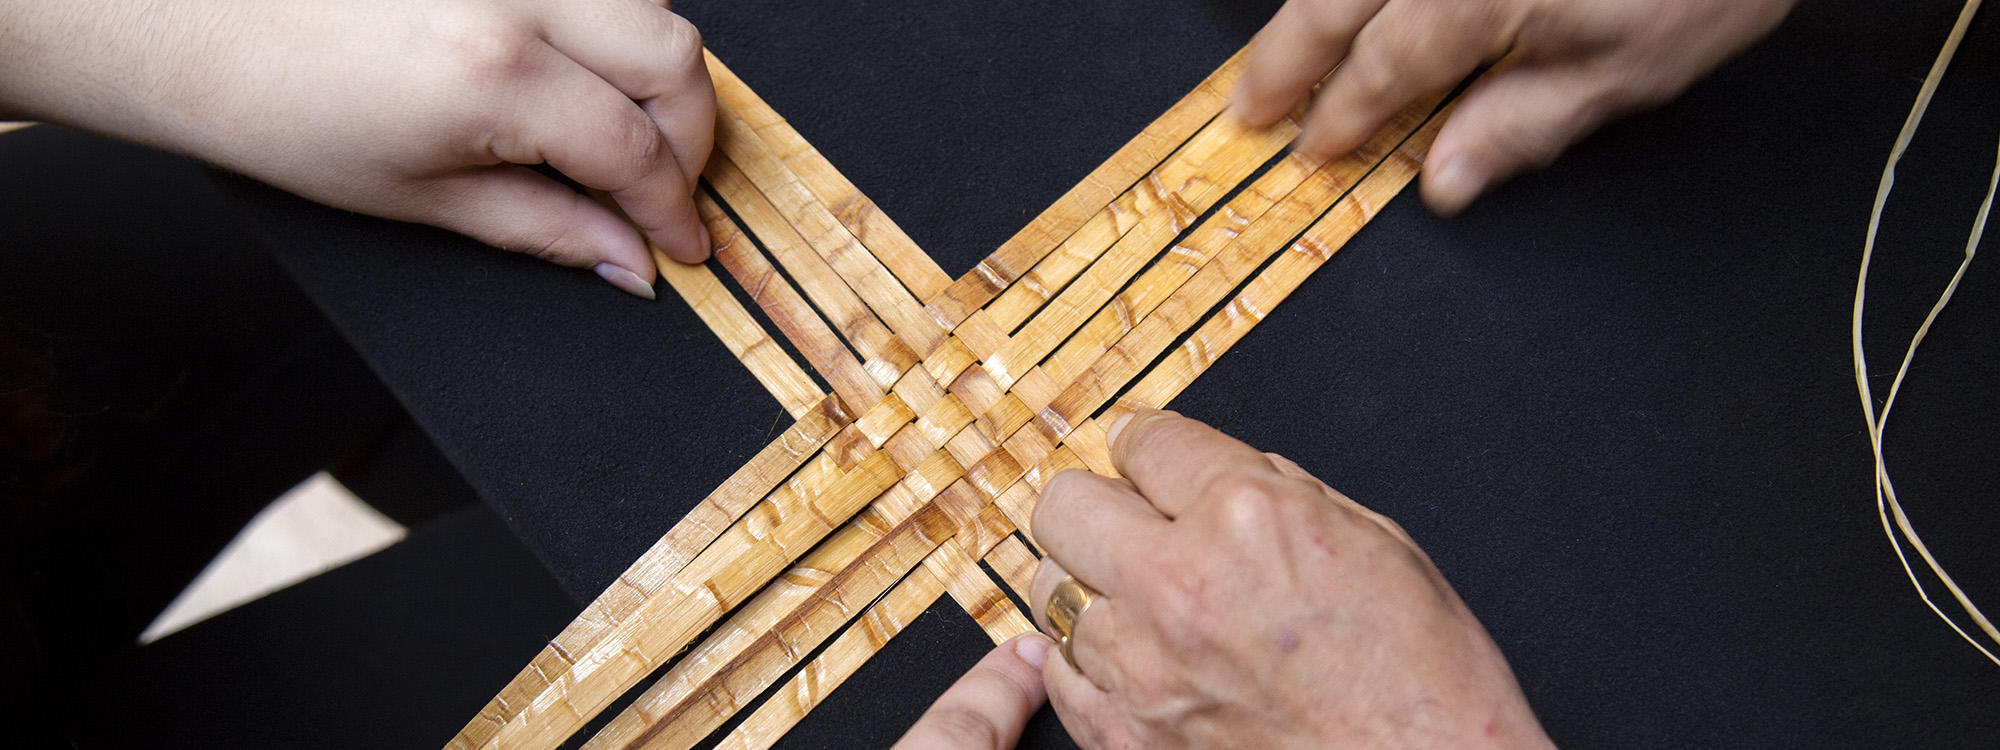 hands weaving basket